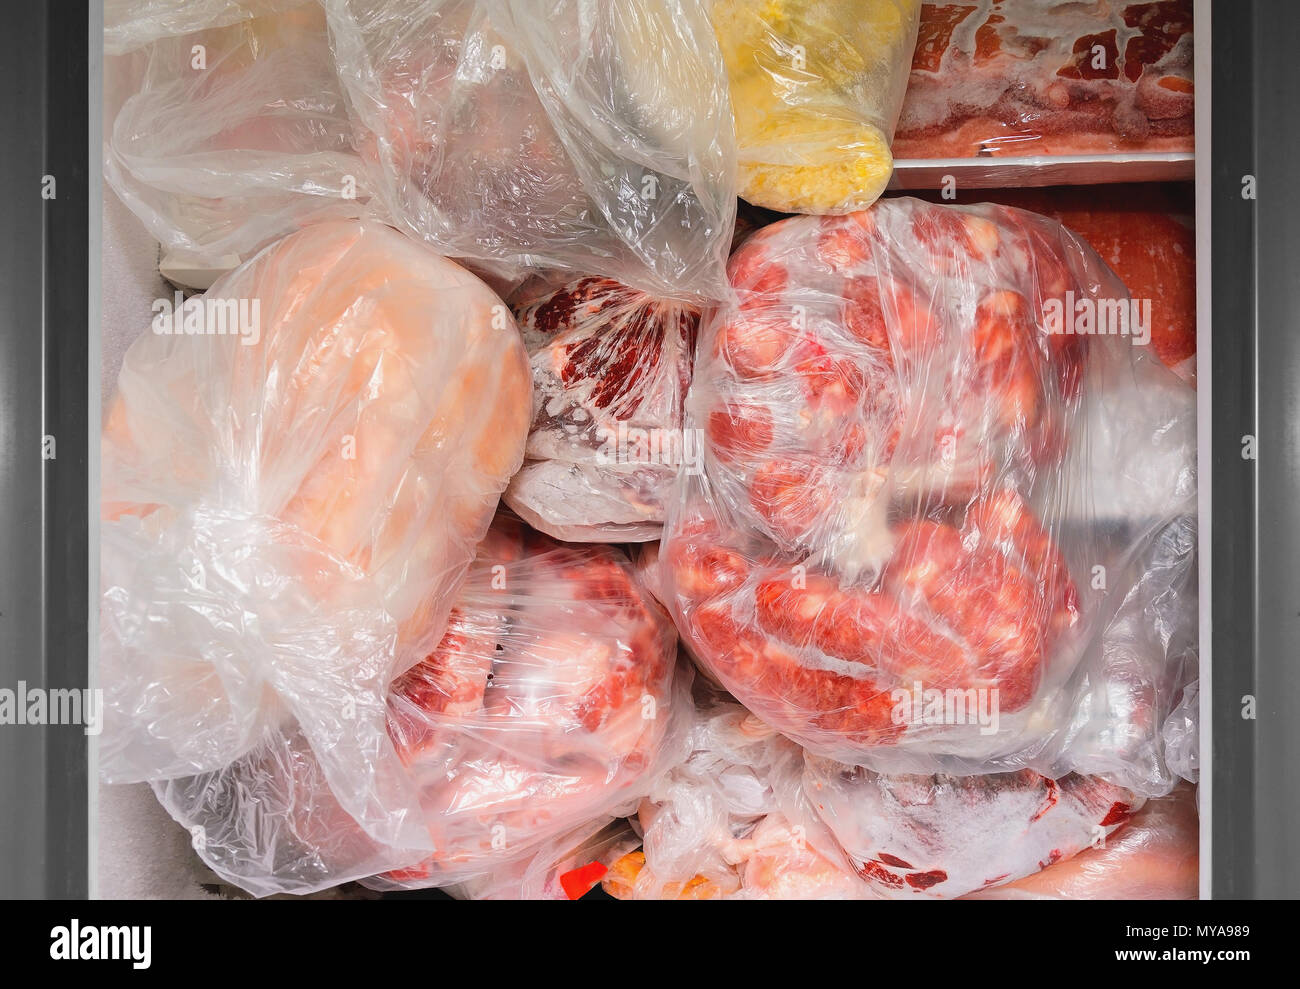 Gefrorene Lebensmittel im Gefrierschrank. Tüten gefroren Fleisch in einer  horizontalen Gefrierschrank. Die Konservierung von Lebensmitteln  Stockfotografie - Alamy